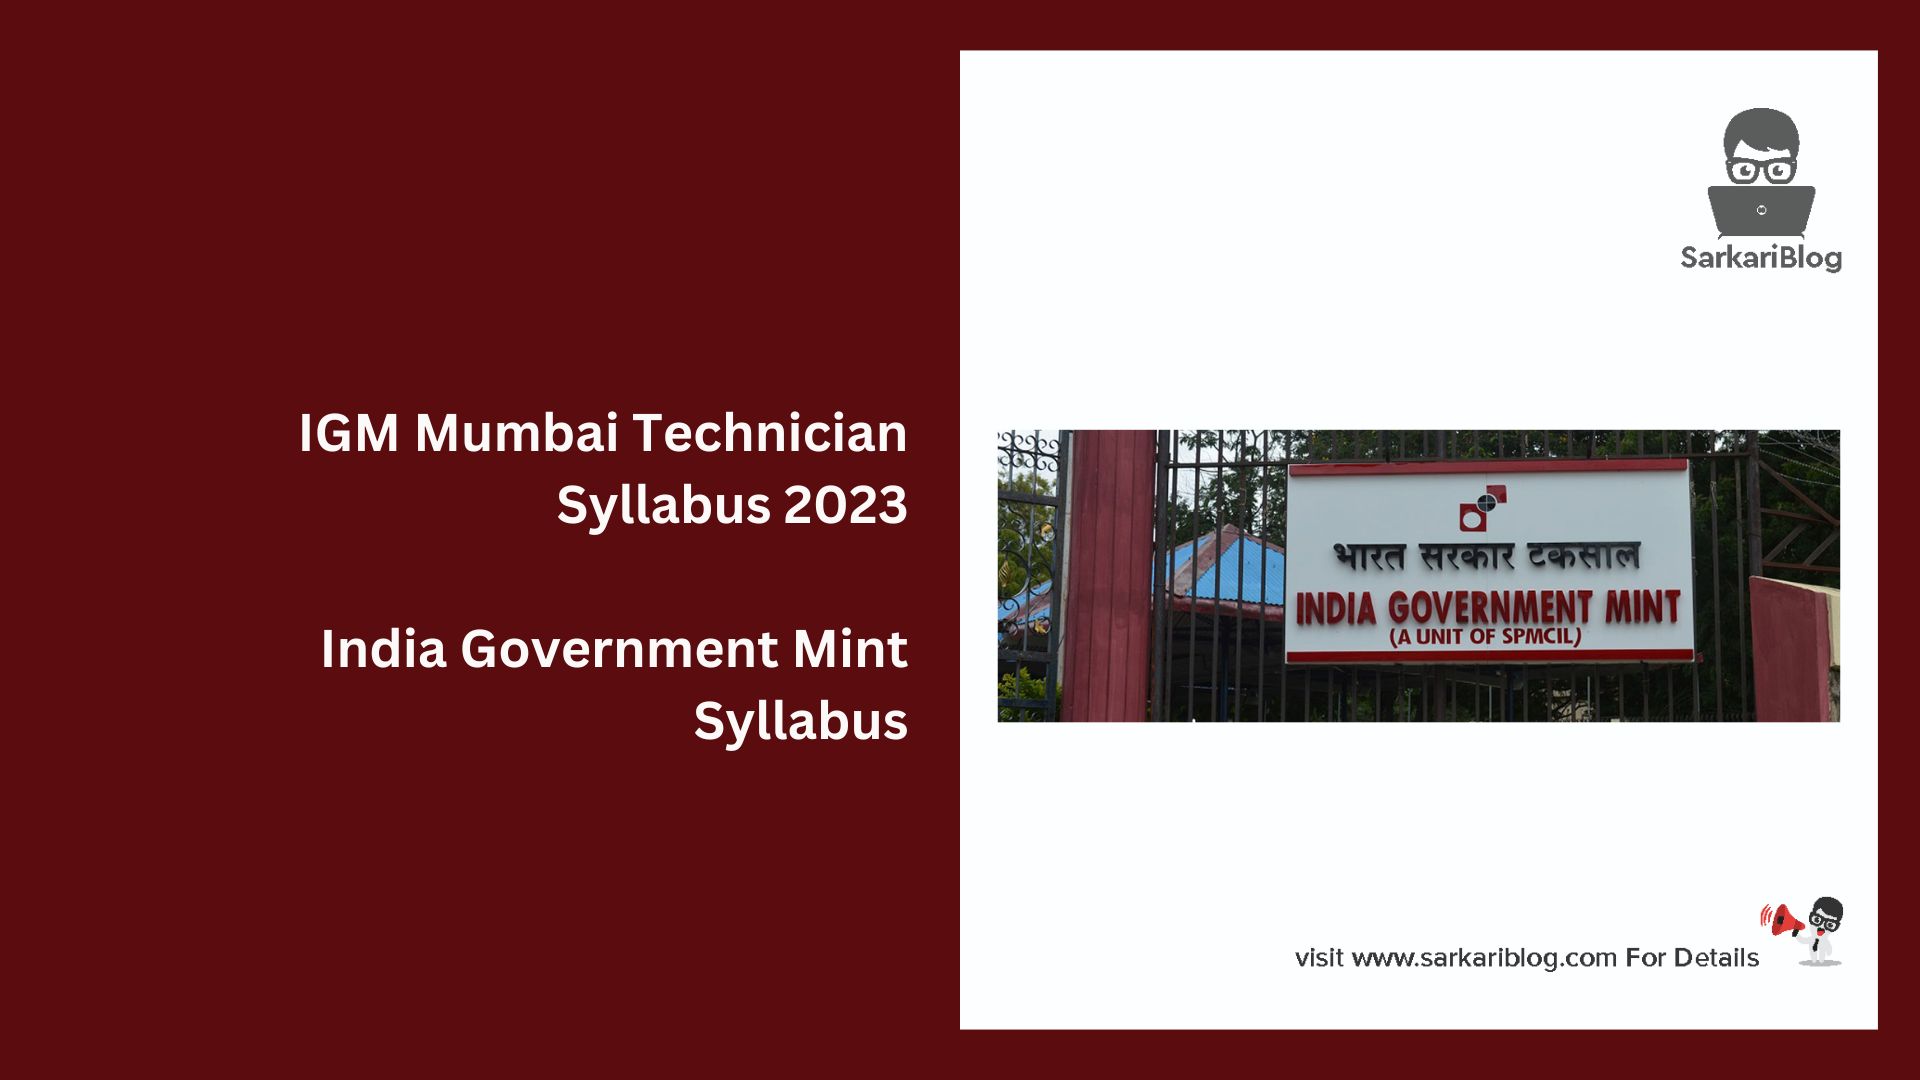 IGM Mumbai Technician Syllabus 2023